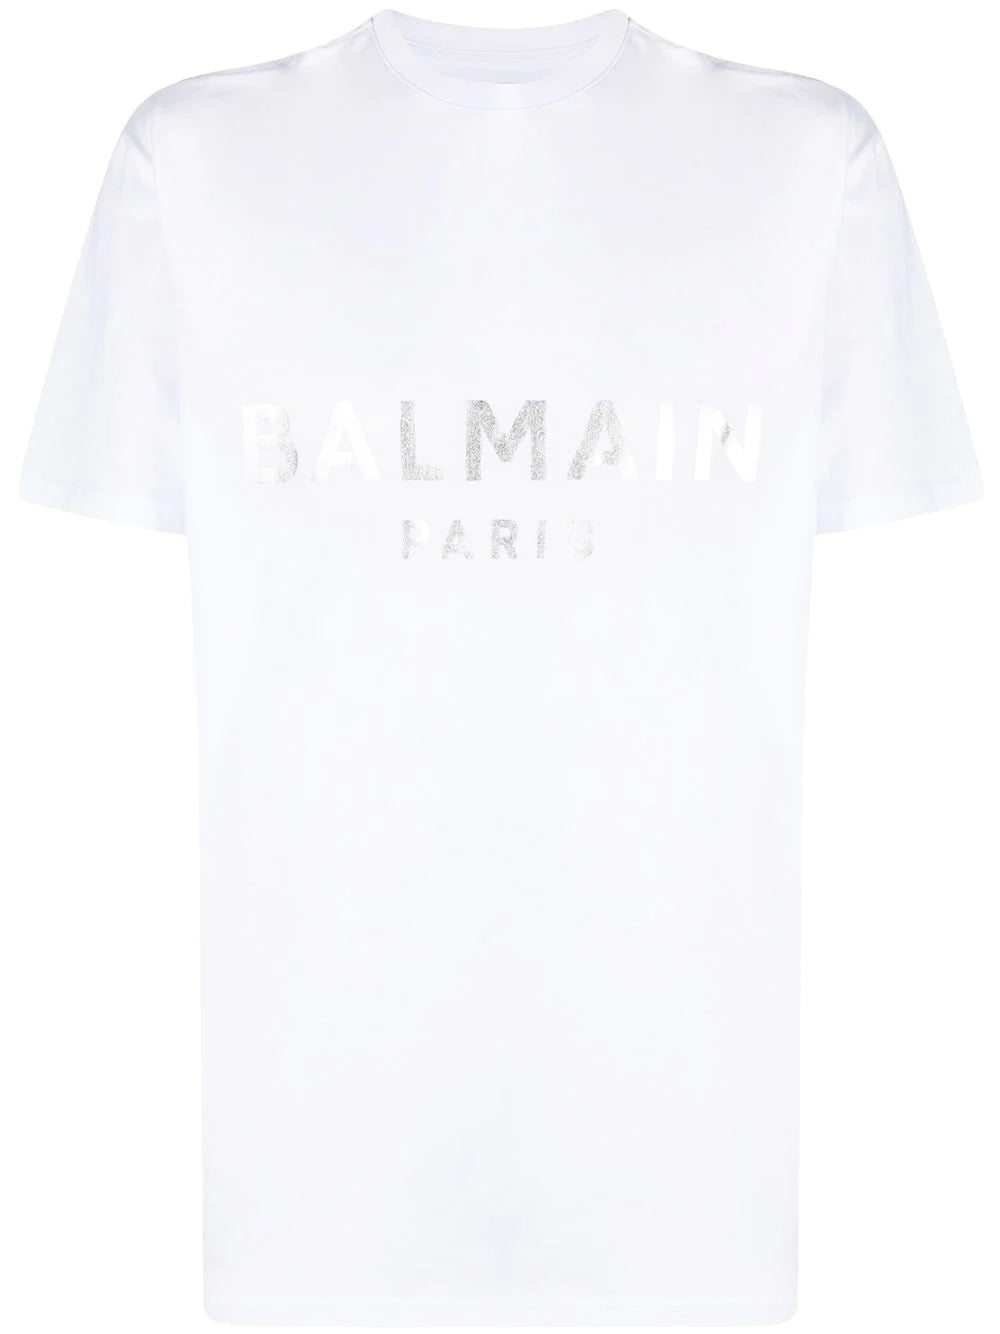 Balmain Silver Print T-Shirt in White